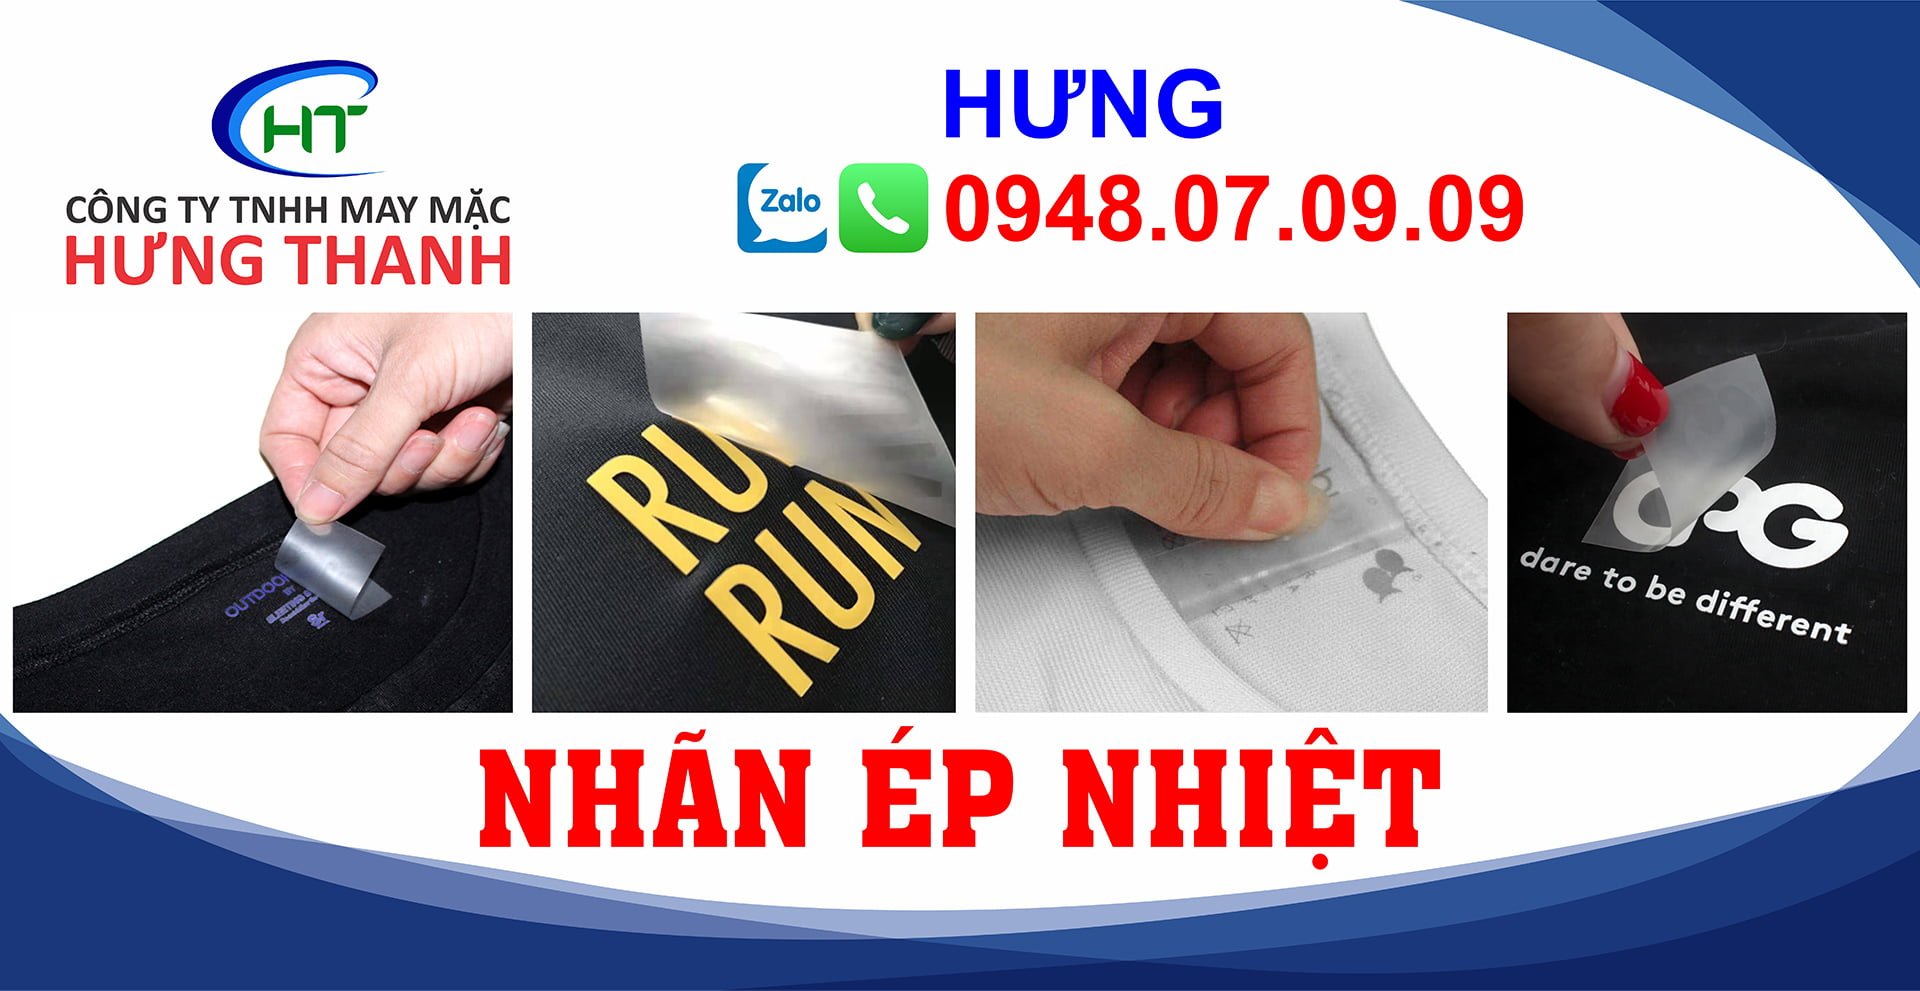 Nhan-ep-nhiet-Hung-Thanh-12.jpg